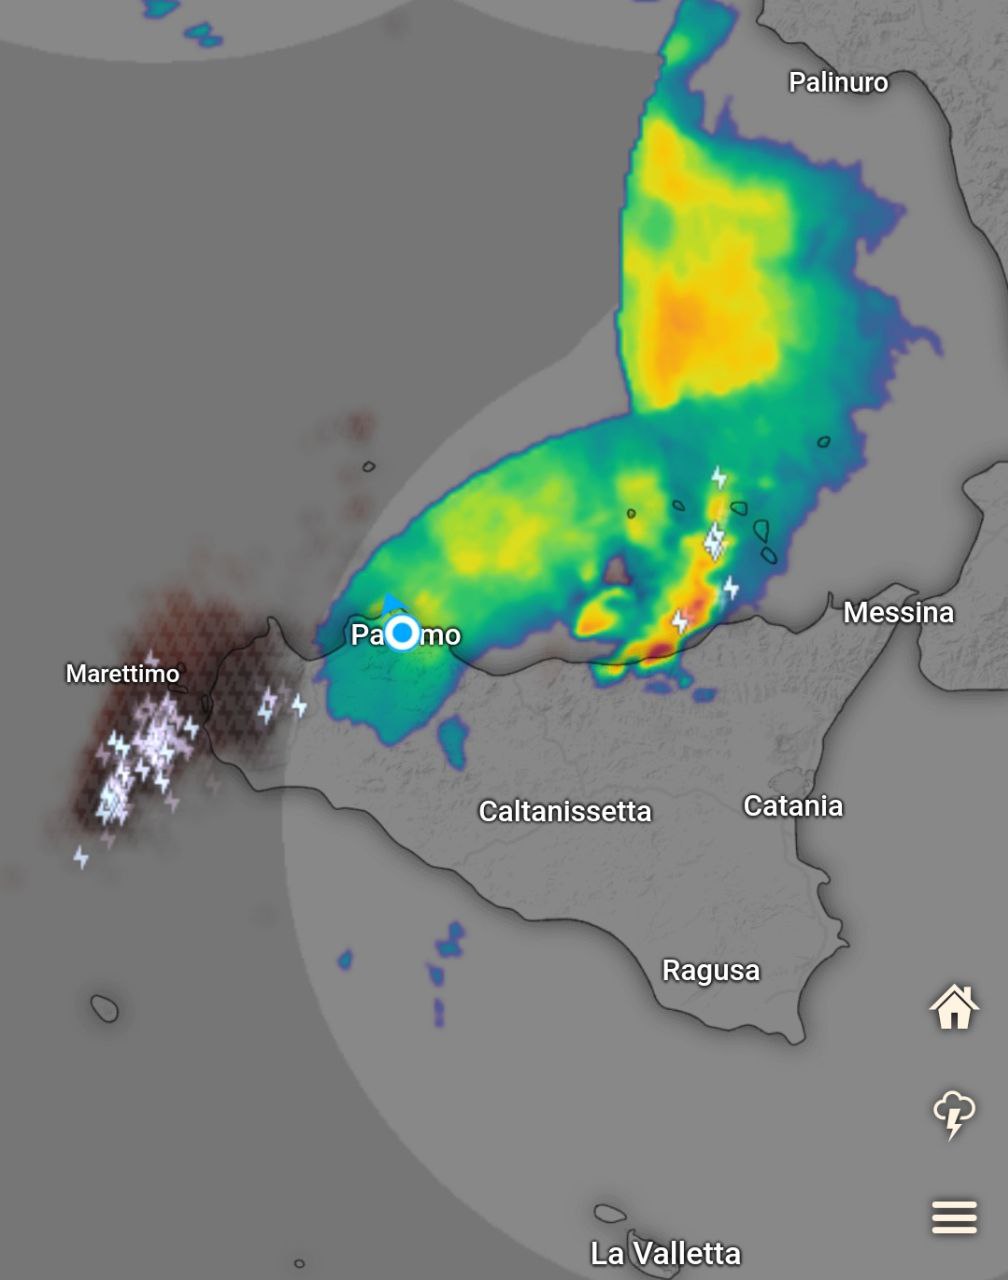 Meteo Sicilia: nubifragi sul trapanese si dirigono verso interno palermitano e agrigentino! Altri temporali tra messinese tirrenico e le Eolie! Situazione live